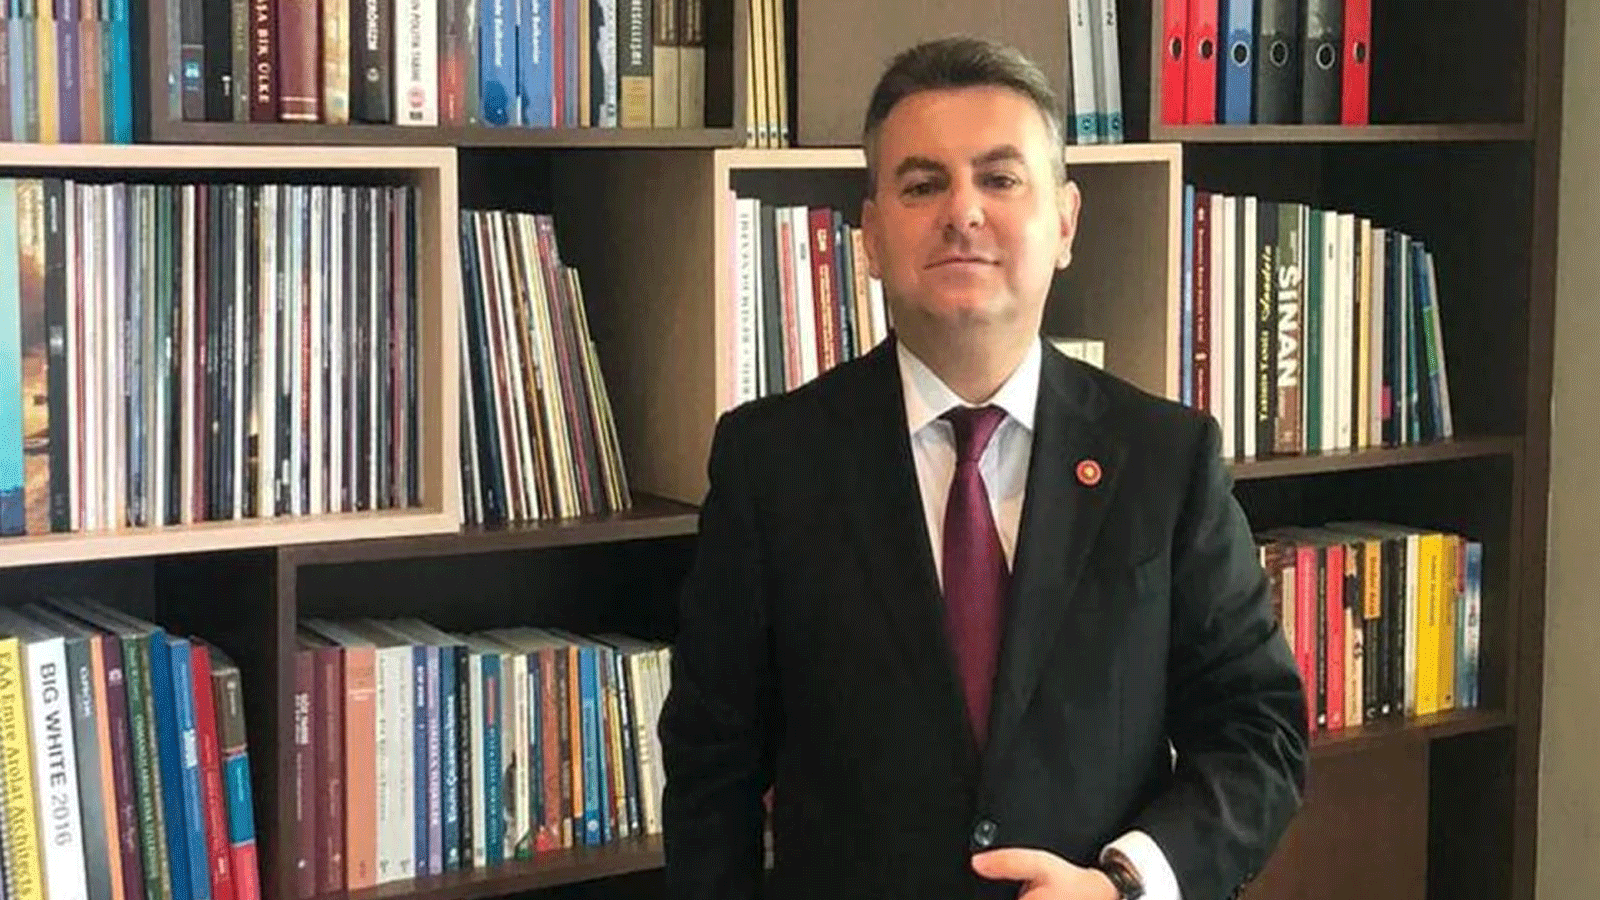 قرقماز كاراجا عضو المجلس الاقتصادي للرئاسة التركية وأحد كوادر حزب العدالة والتنمية 